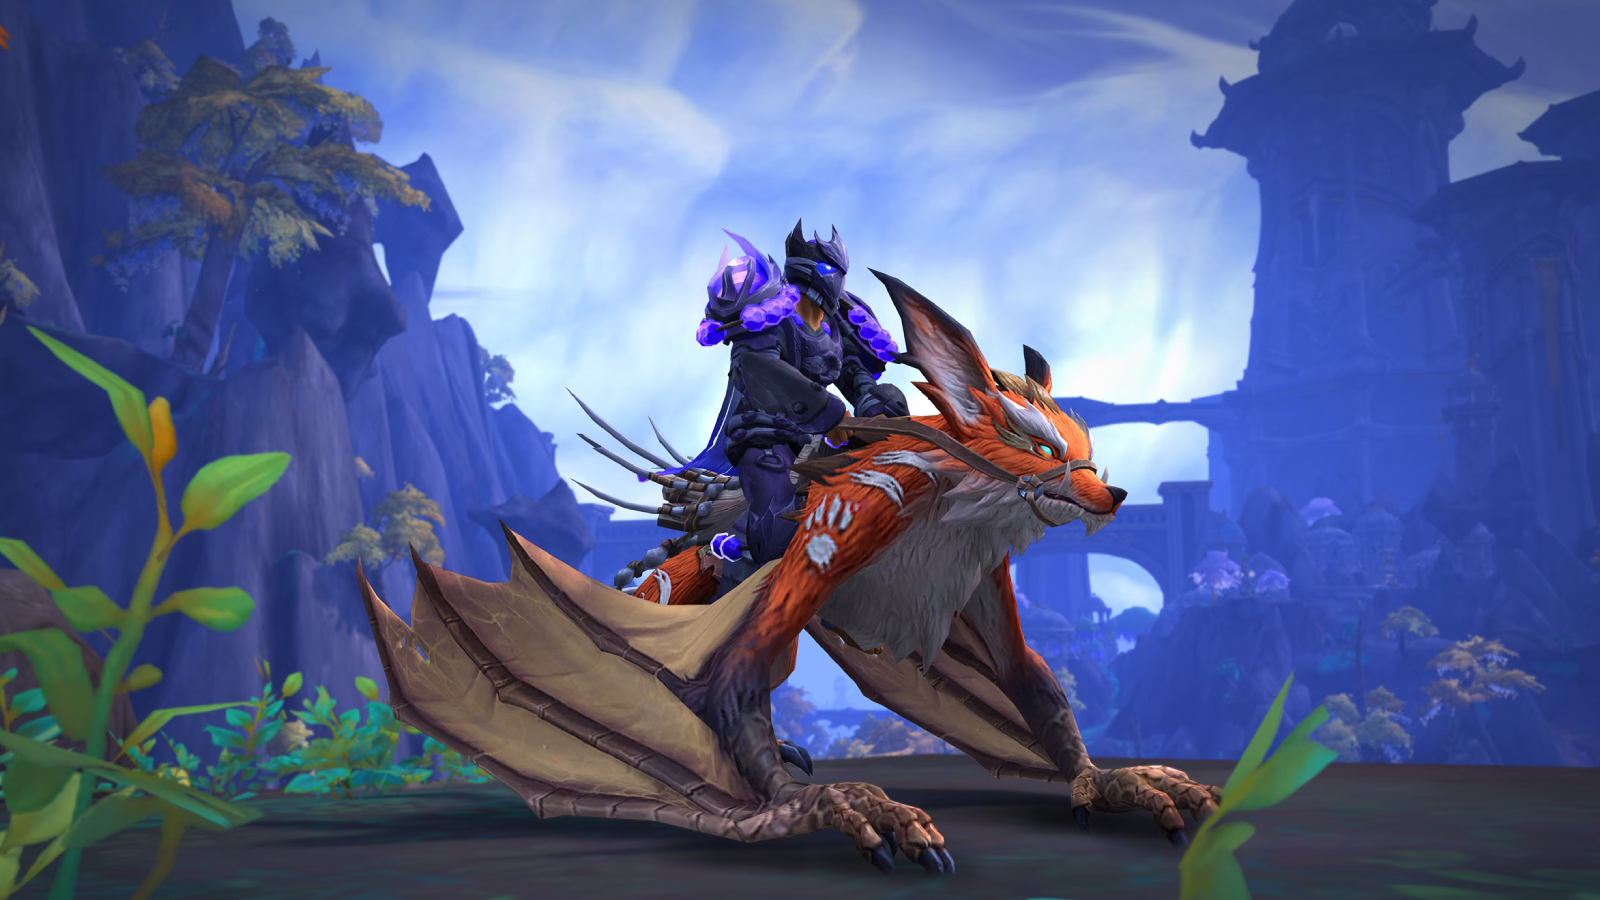 Eine Welt des Warcraft -Charakters, die auf einem Drachenmontage sitzt